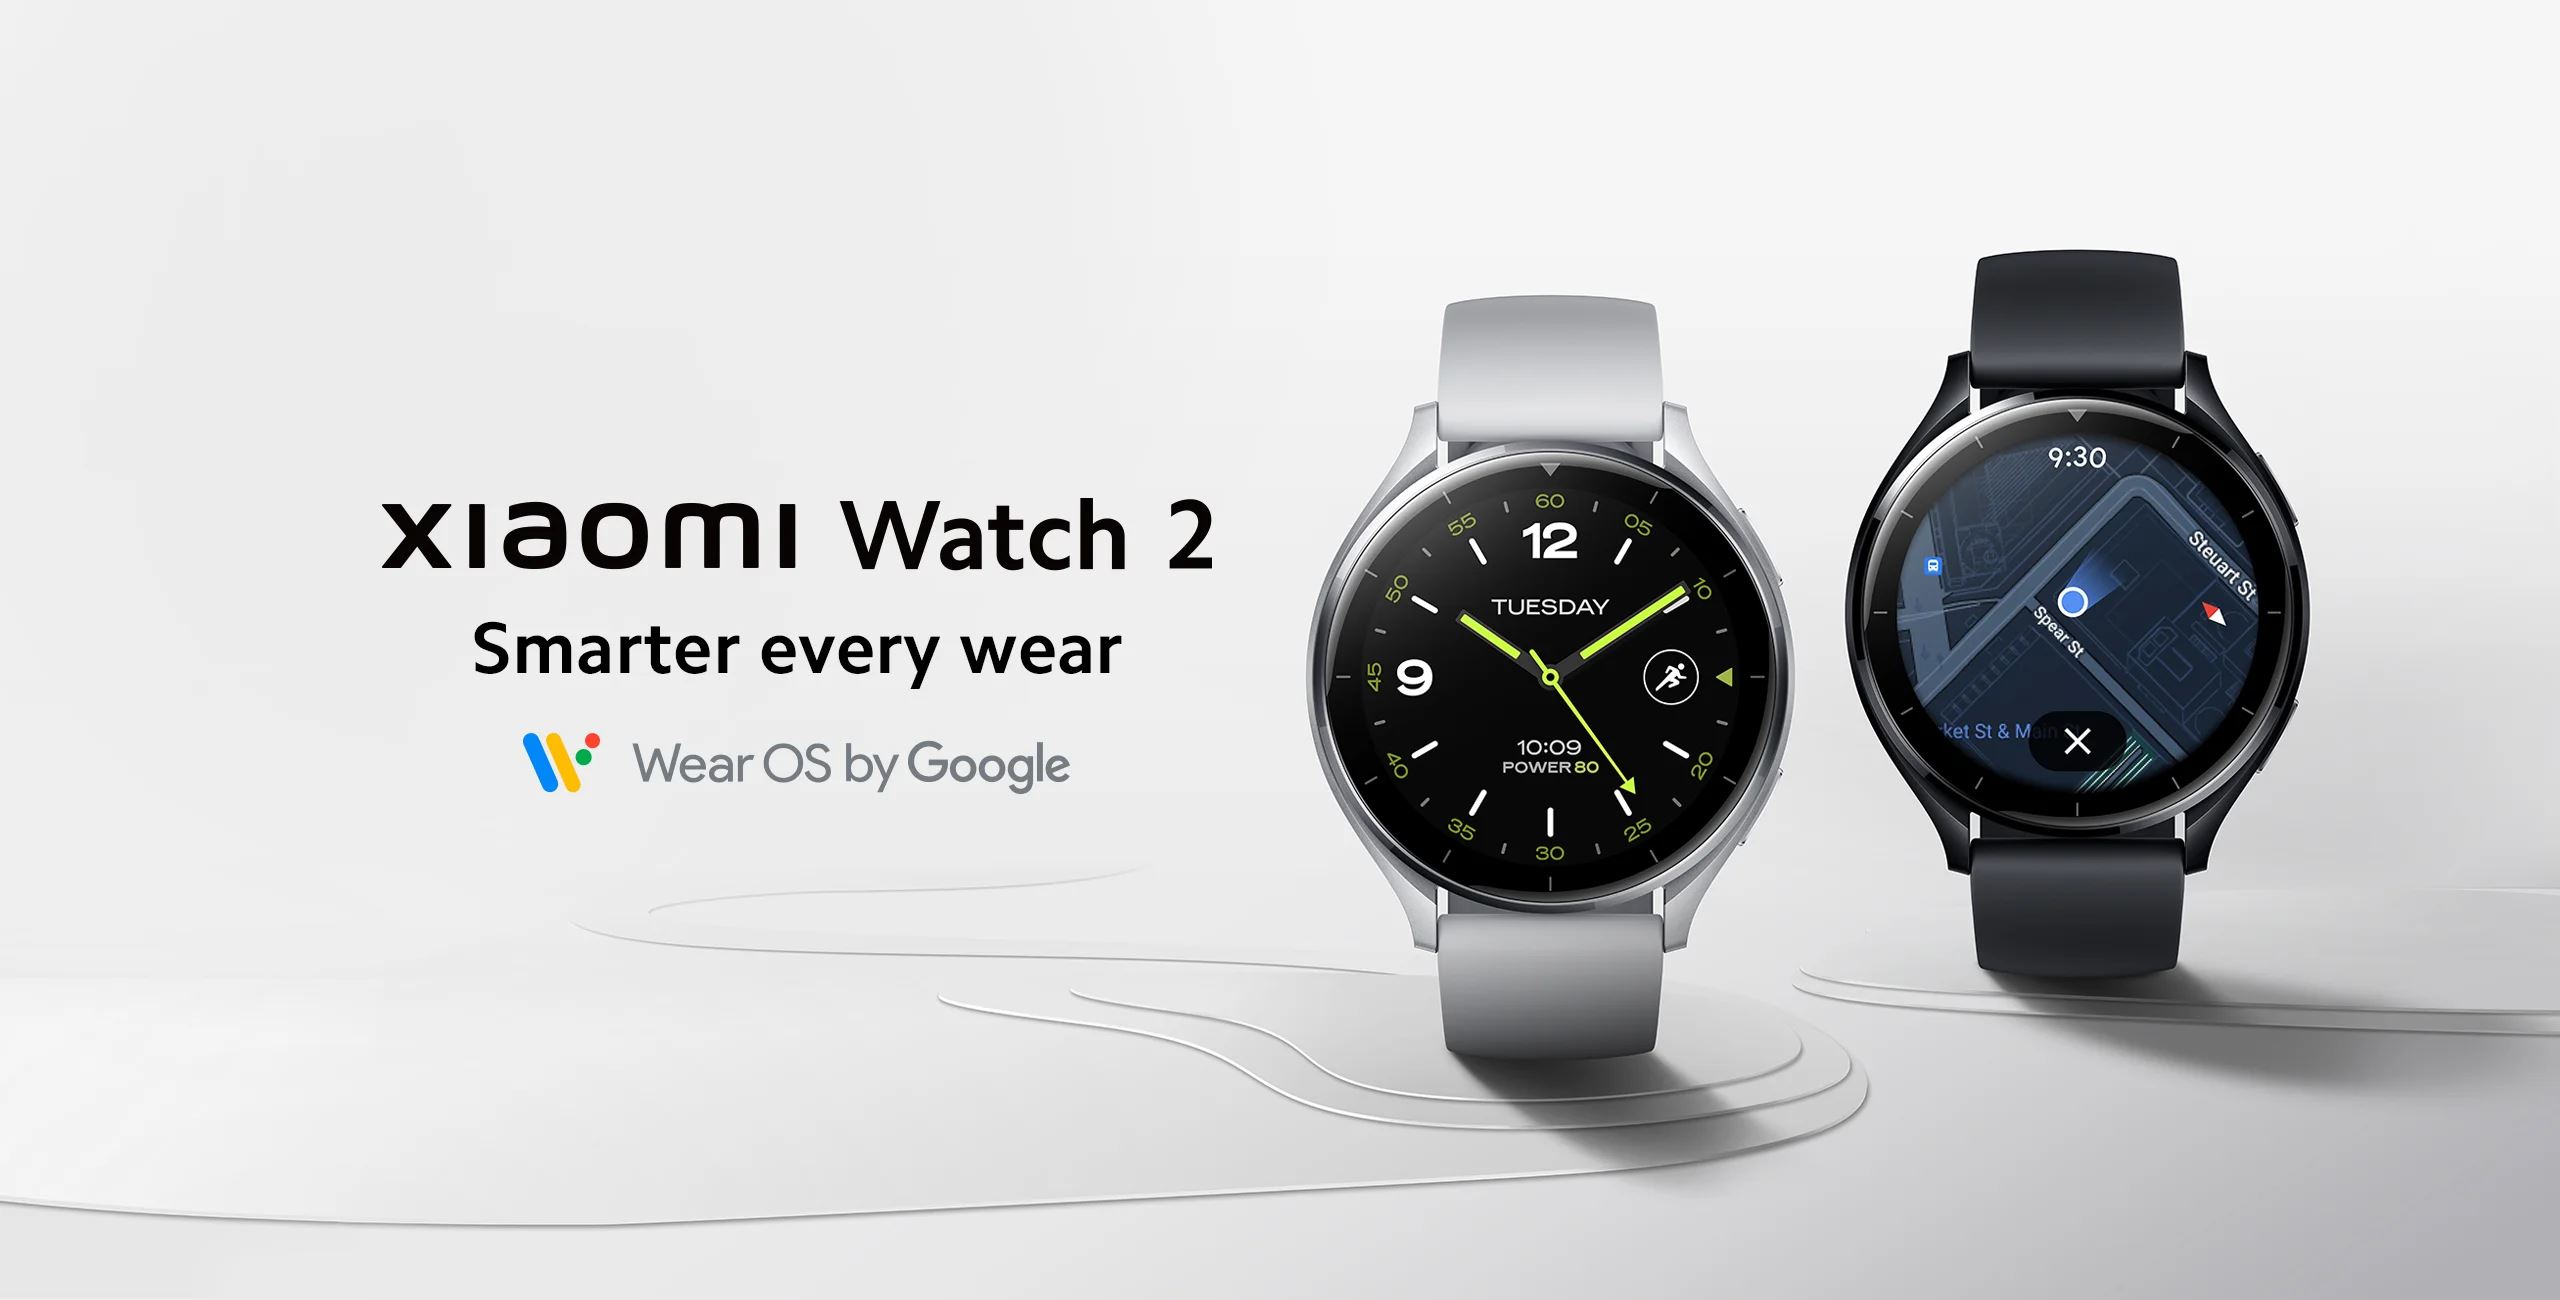 Chytré hodinky Xiaomi Watch 2